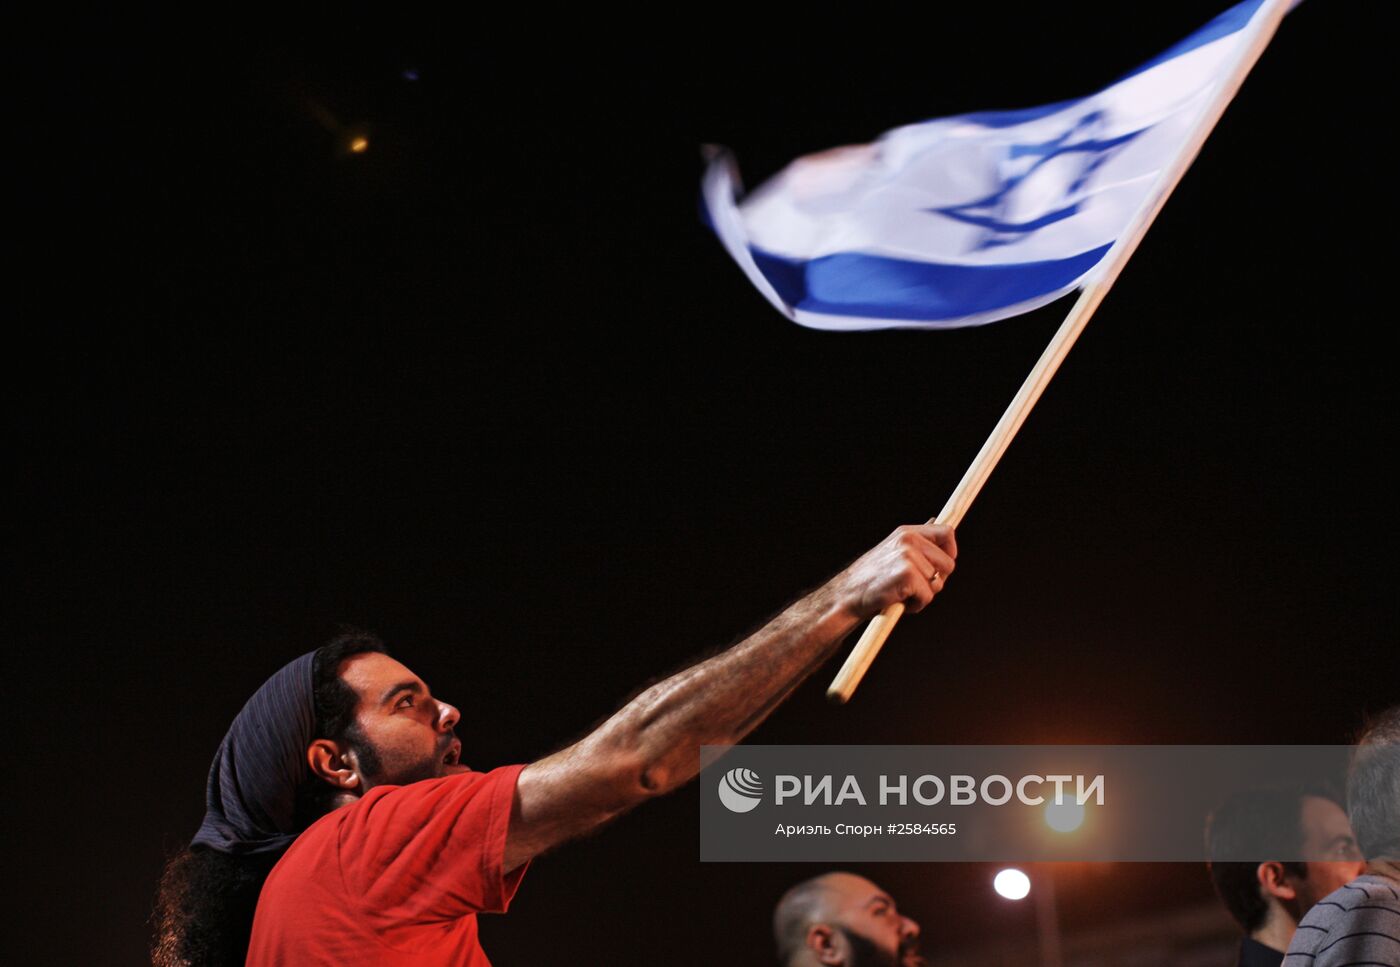 Демонстрация против существующего политического режима в Тель-Авиве